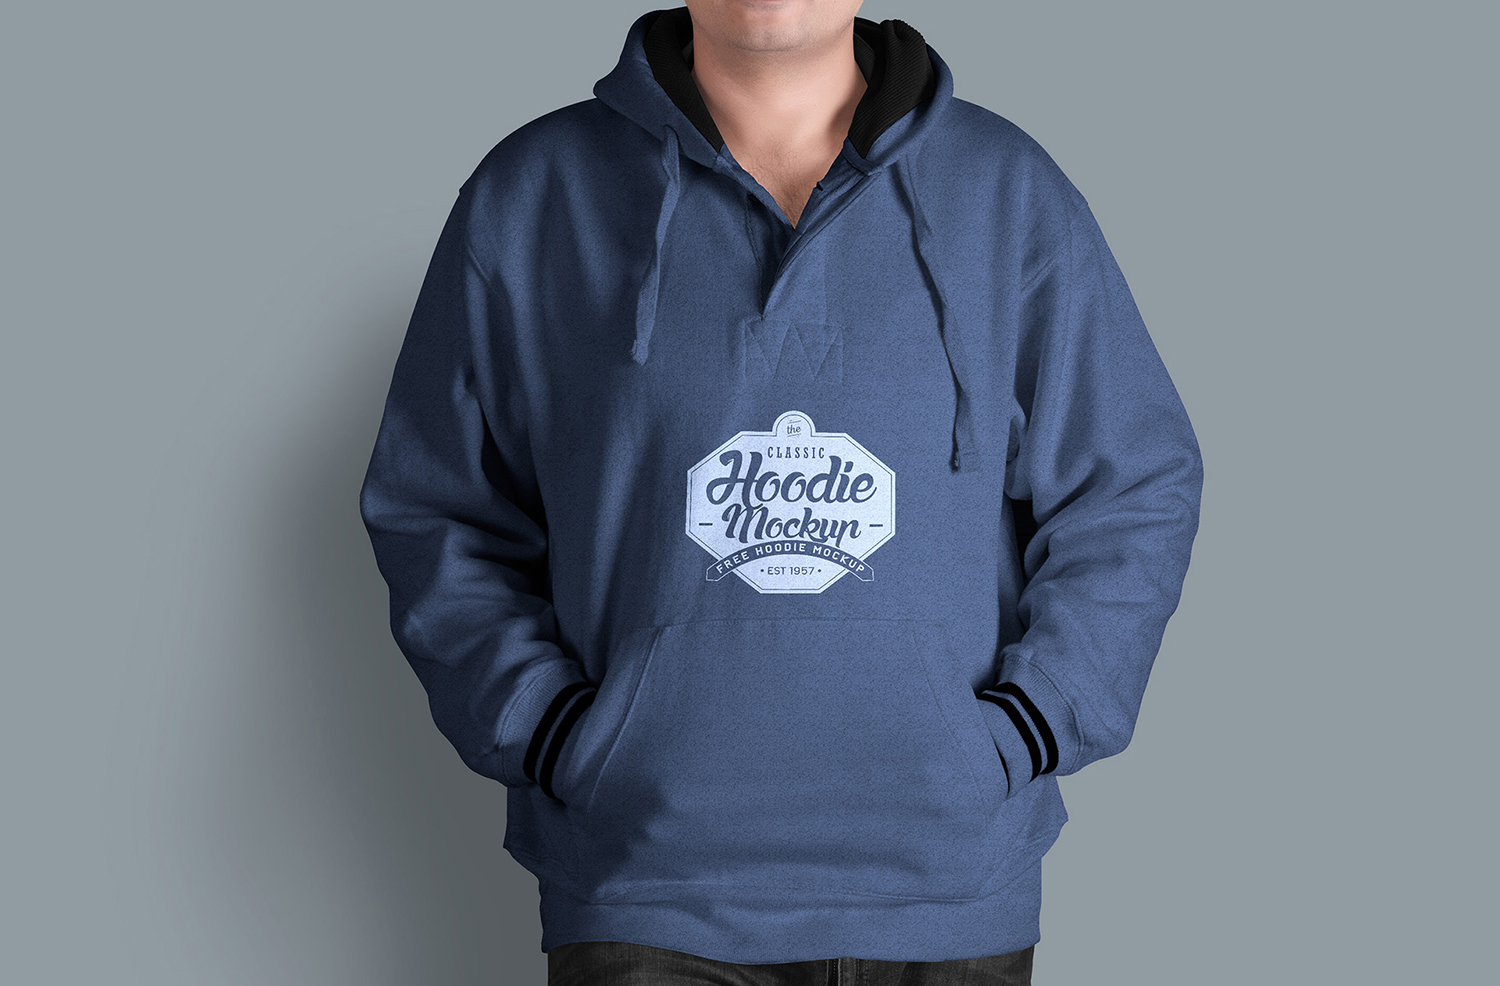 free hoodie mock up